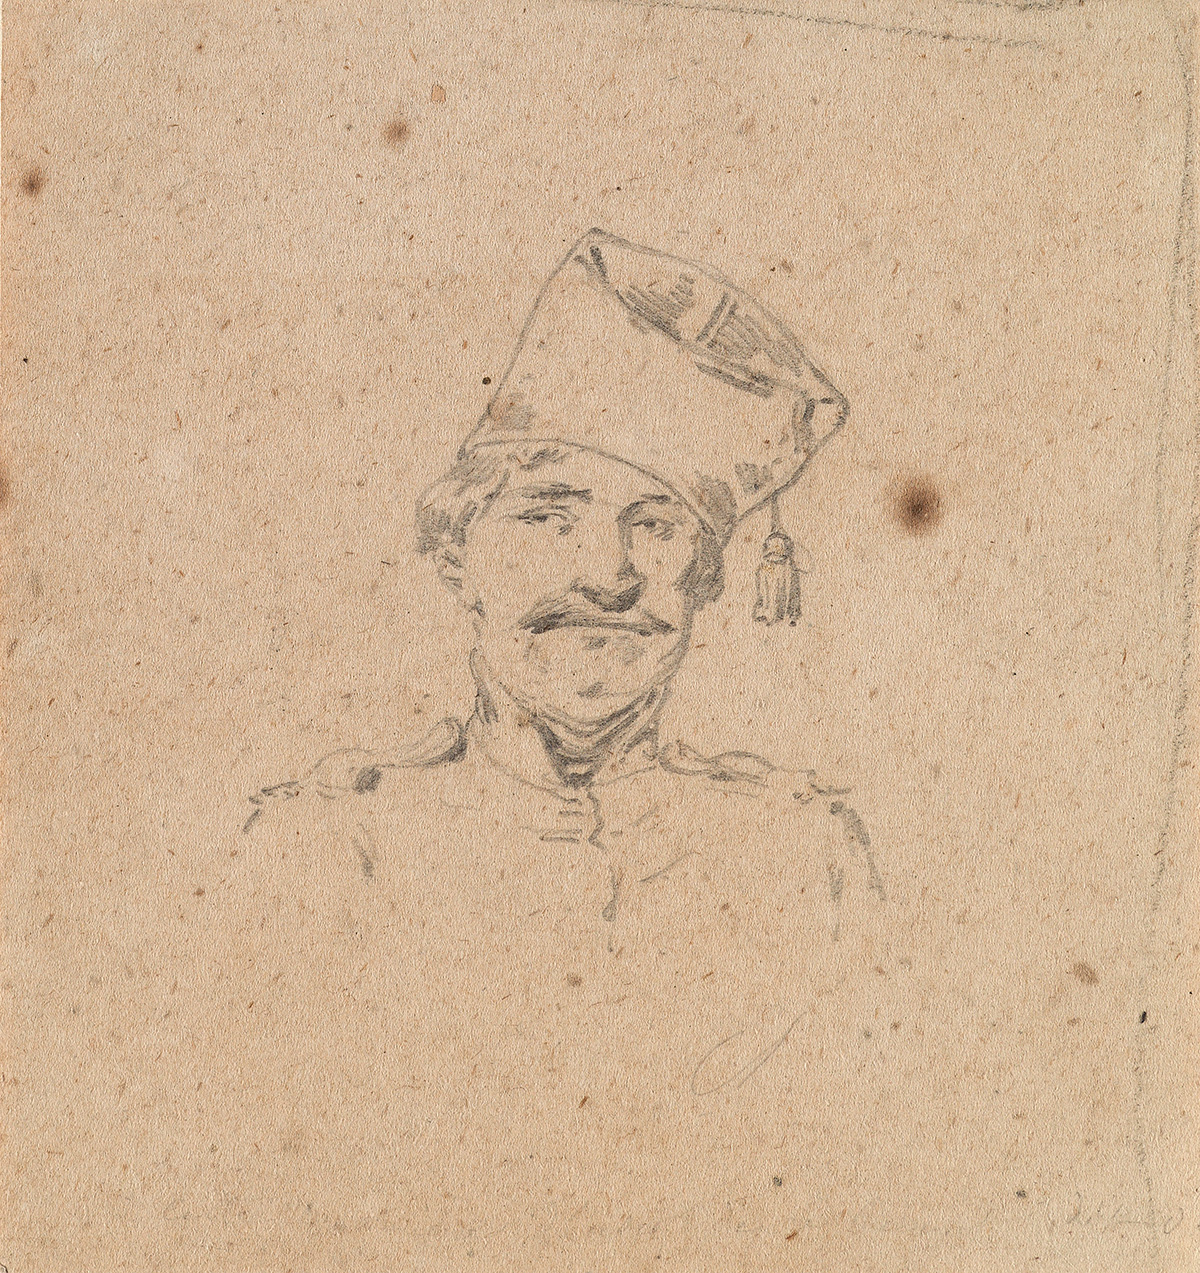 CHARLES-ÉMILE JACQUES (Paris 1813-1894 Paris) Group of 4 pencil portrait studies of soldiers.